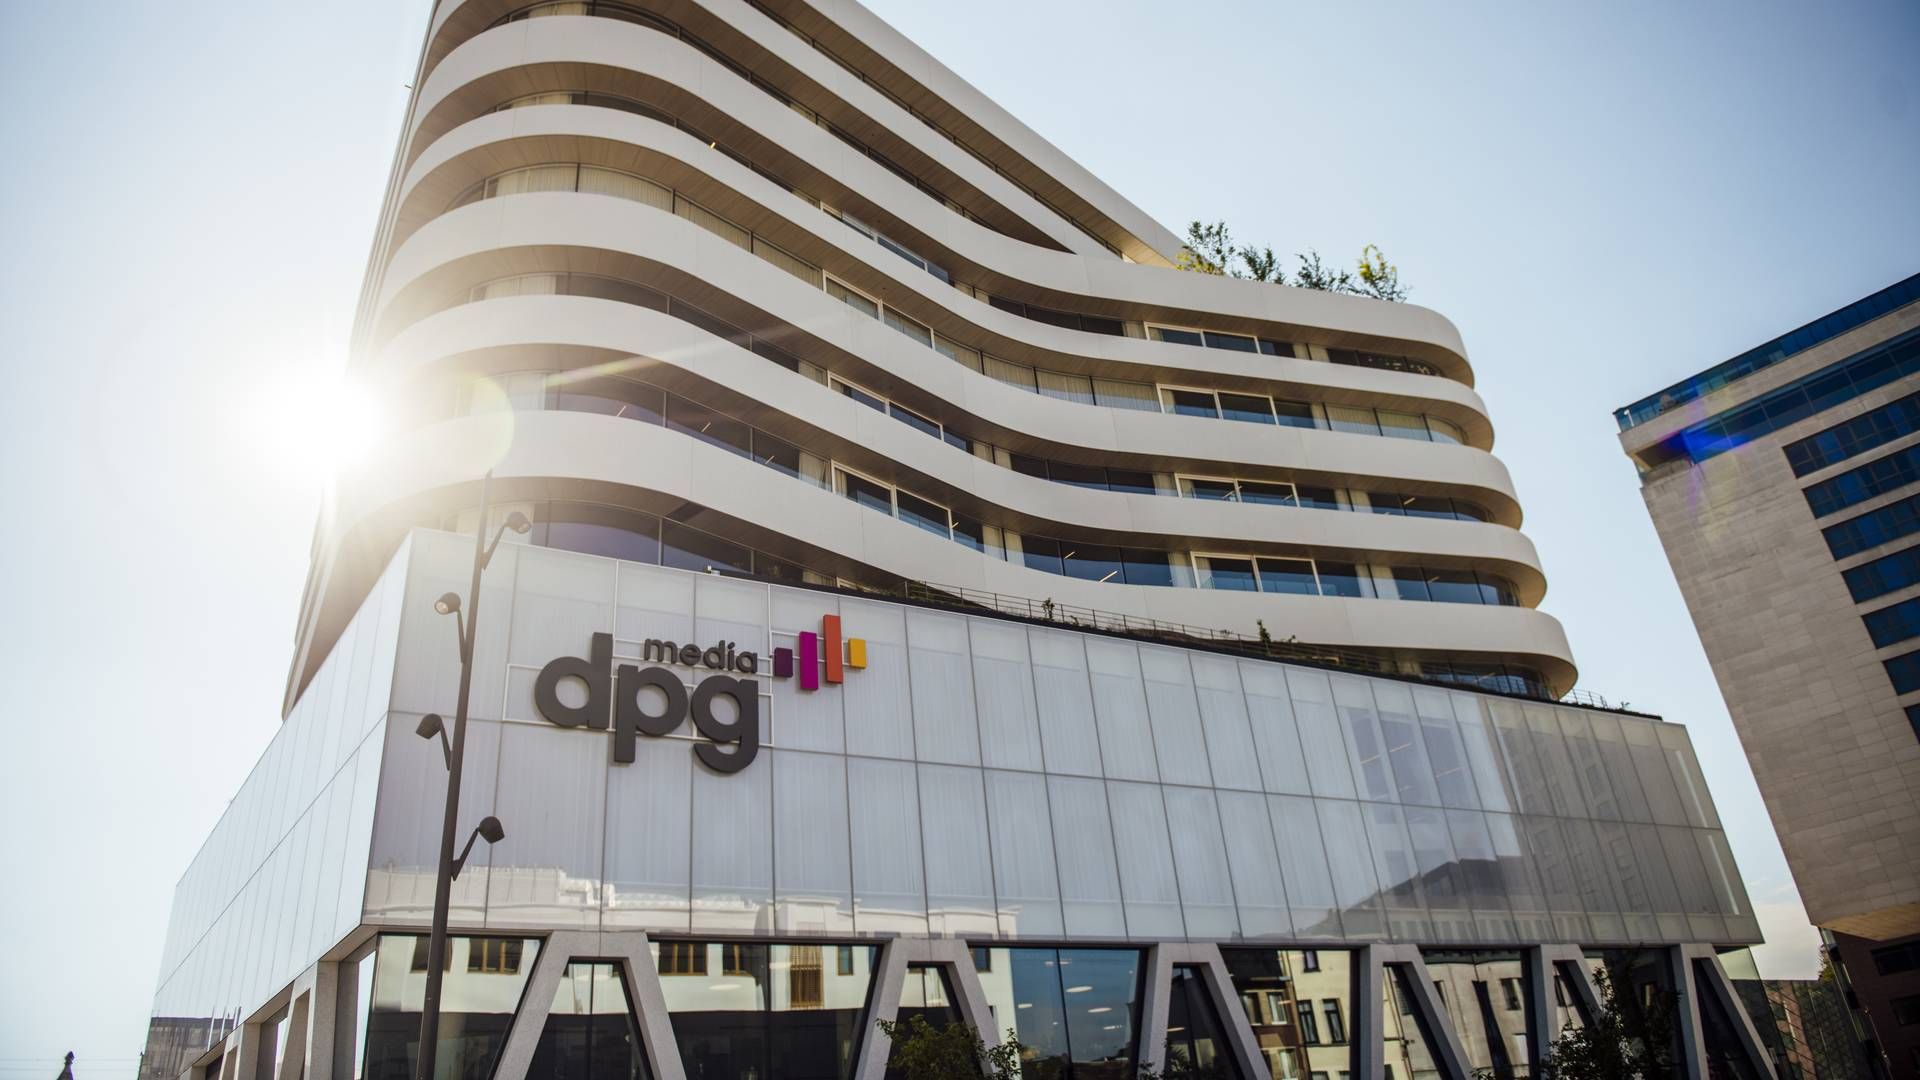 DPG Media har hovedsæde i Antwerpen i Belgien. | Foto: PR/DPG Media